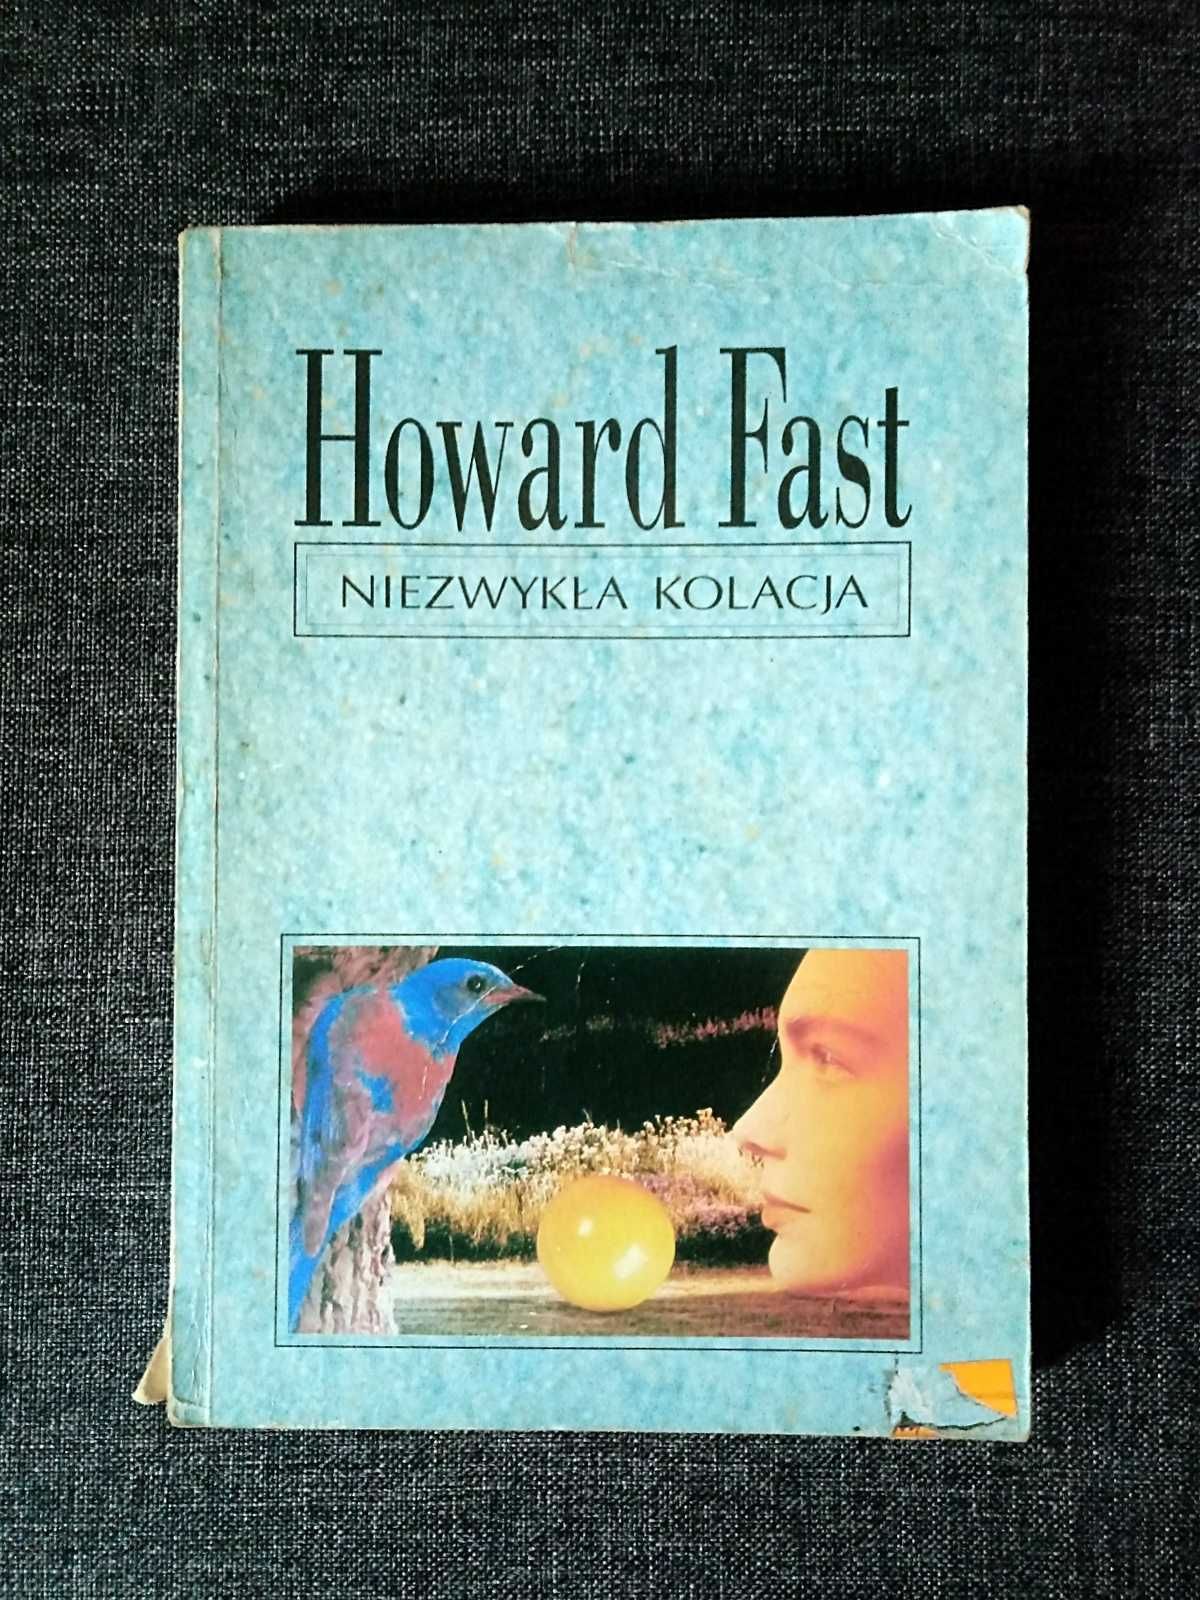 Howard Fast "Niezwykła kolacja" Dom Wydawniczy ARKA-TEXT Warszawa 1993